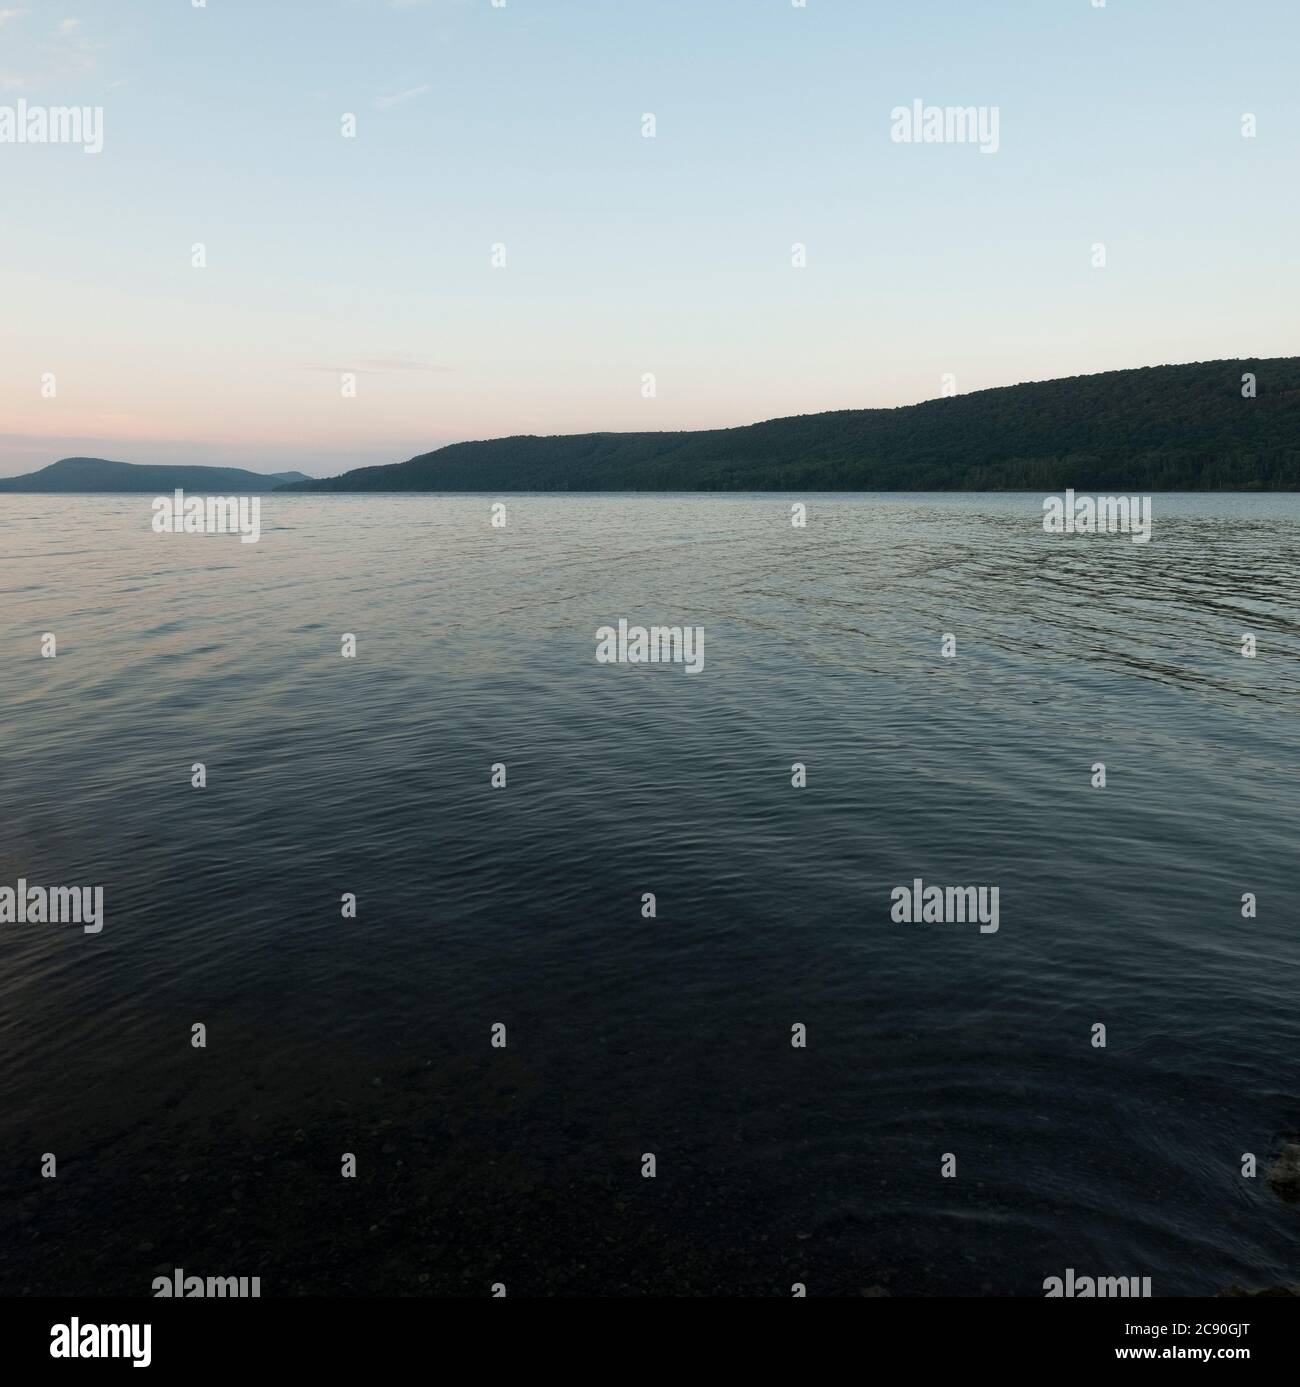 USA, Otsego Lake at dusk Stock Photo